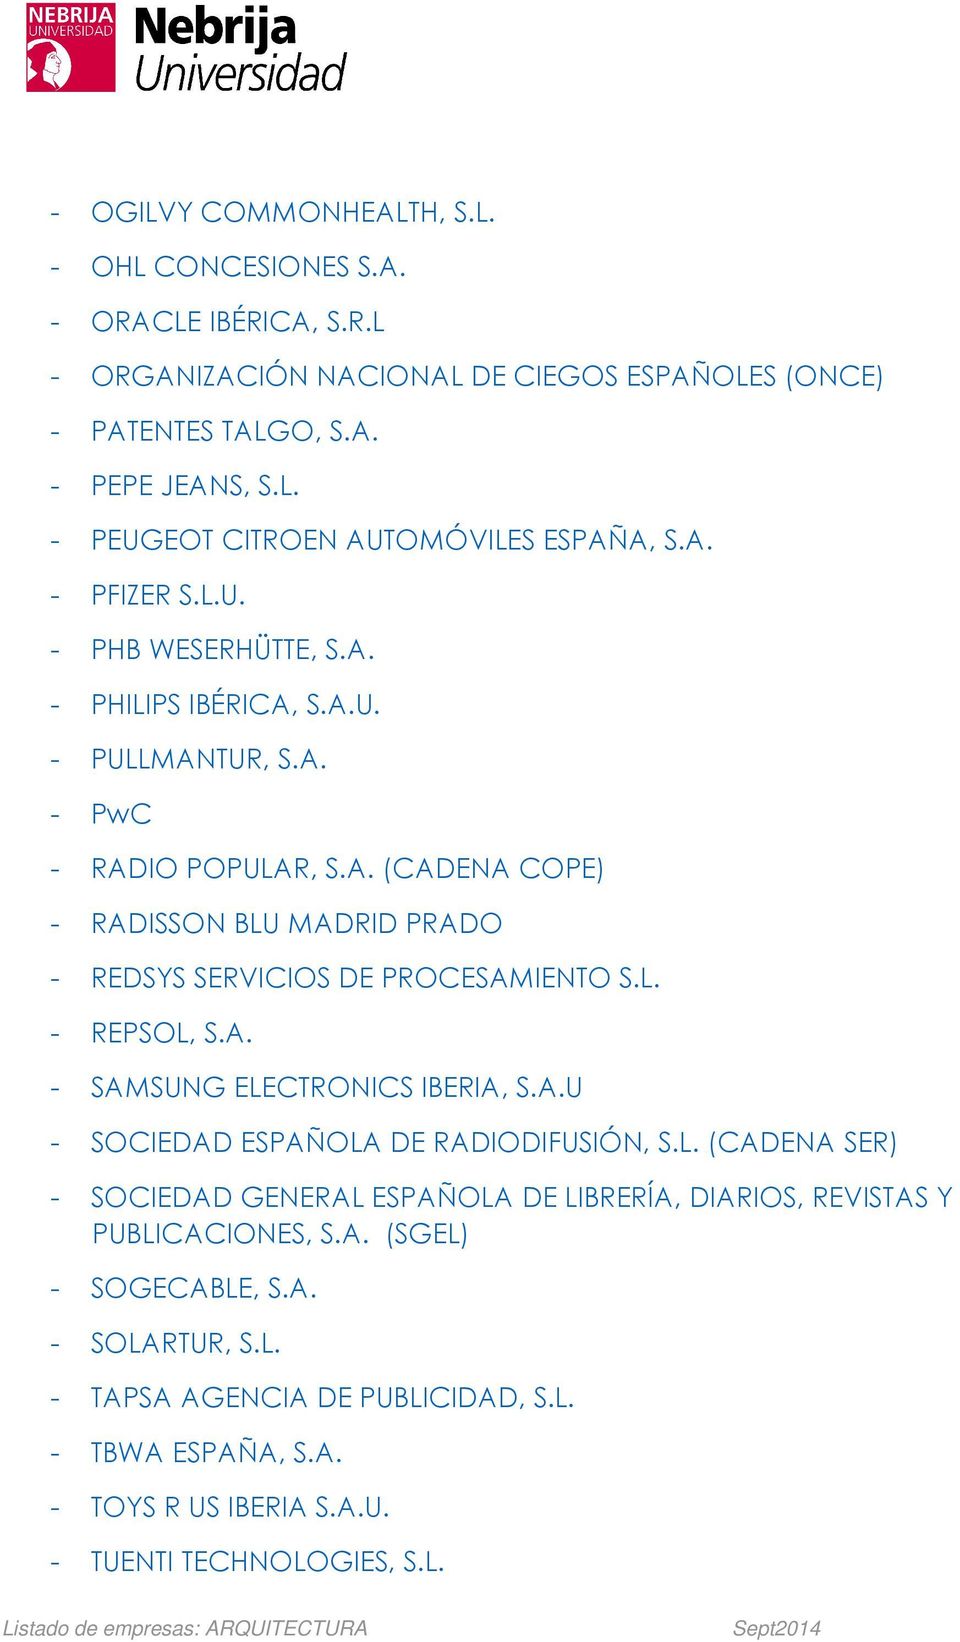 L. - REPSOL, S.A. - SAMSUNG ELECTRONICS IBERIA, S.A.U - SOCIEDAD ESPAÑOLA DE RADIODIFUSIÓN, S.L. (CADENA SER) - SOCIEDAD GENERAL ESPAÑOLA DE LIBRERÍA, DIARIOS, REVISTAS Y PUBLICACIONES, S.